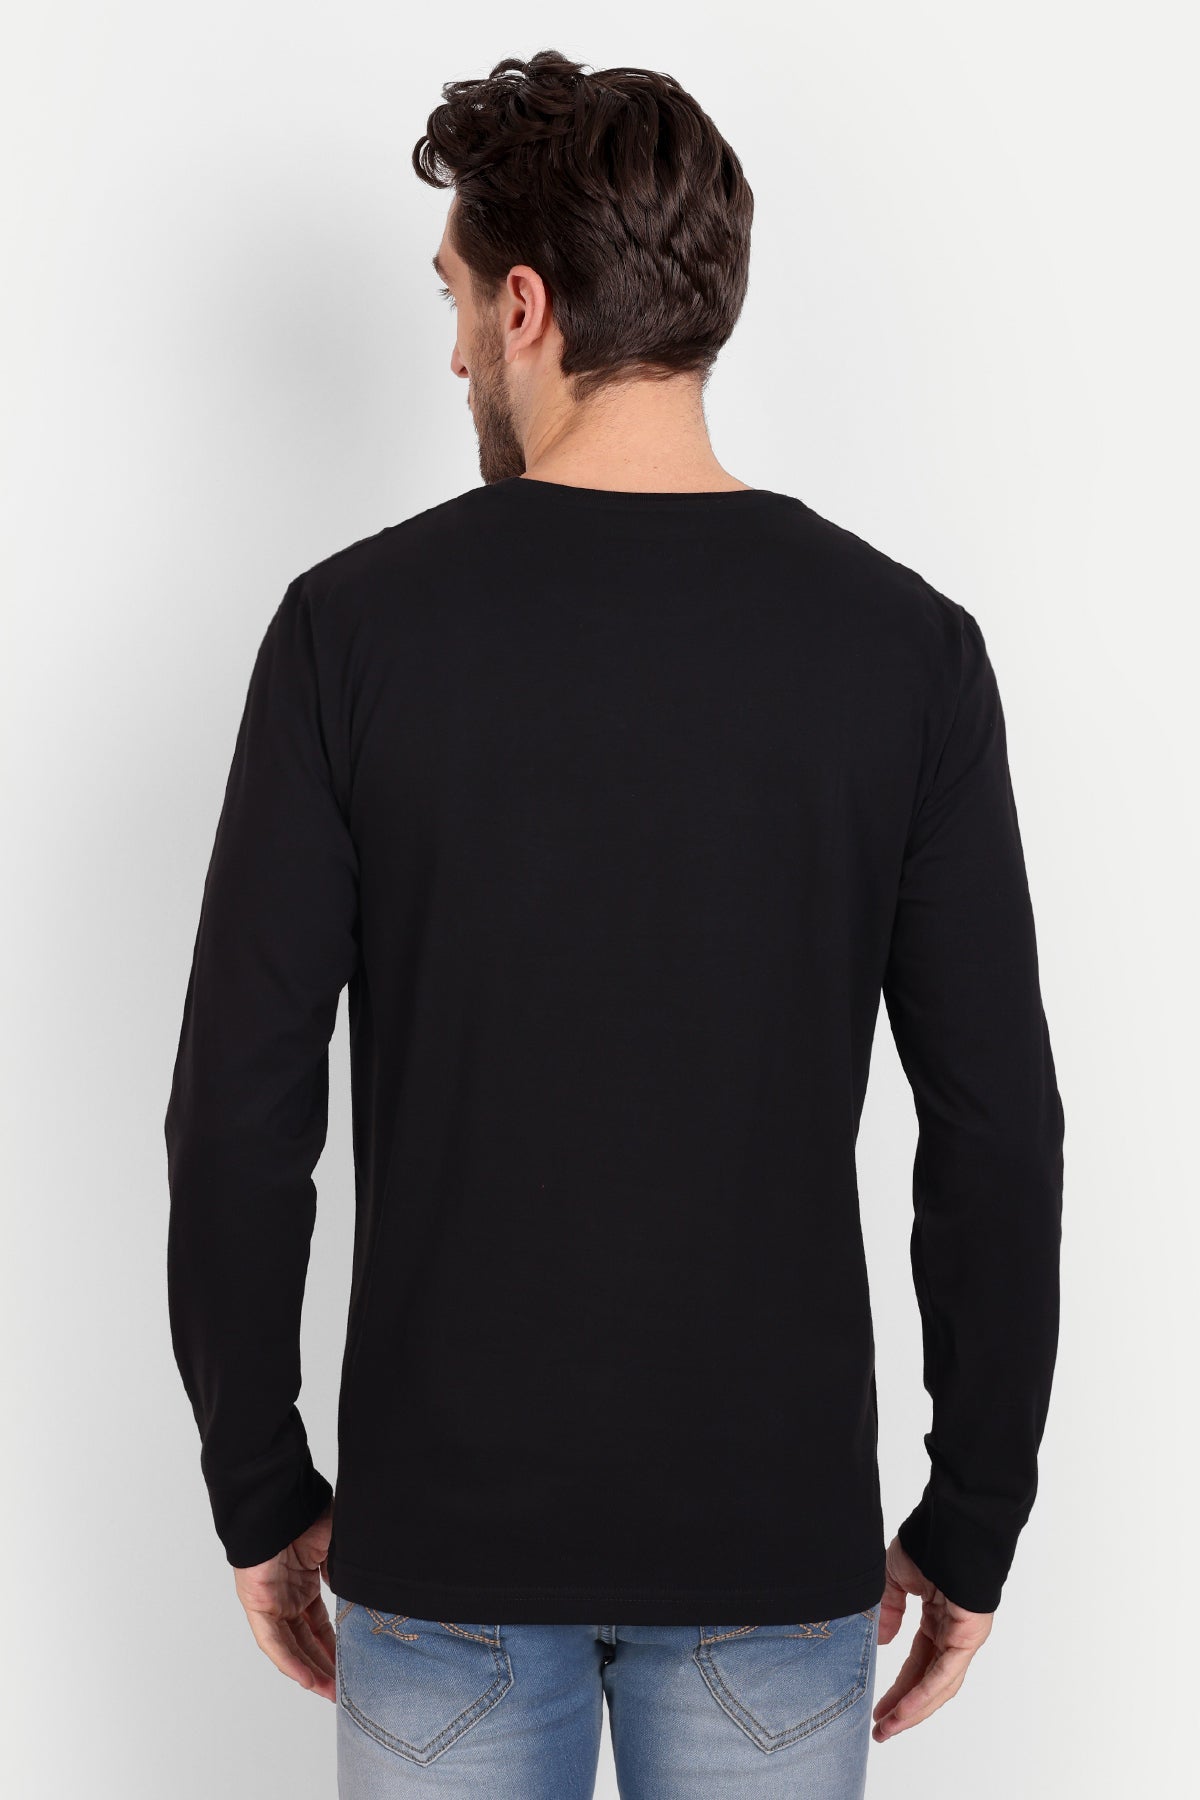 Men's Full Sleeve Black T-Shirt